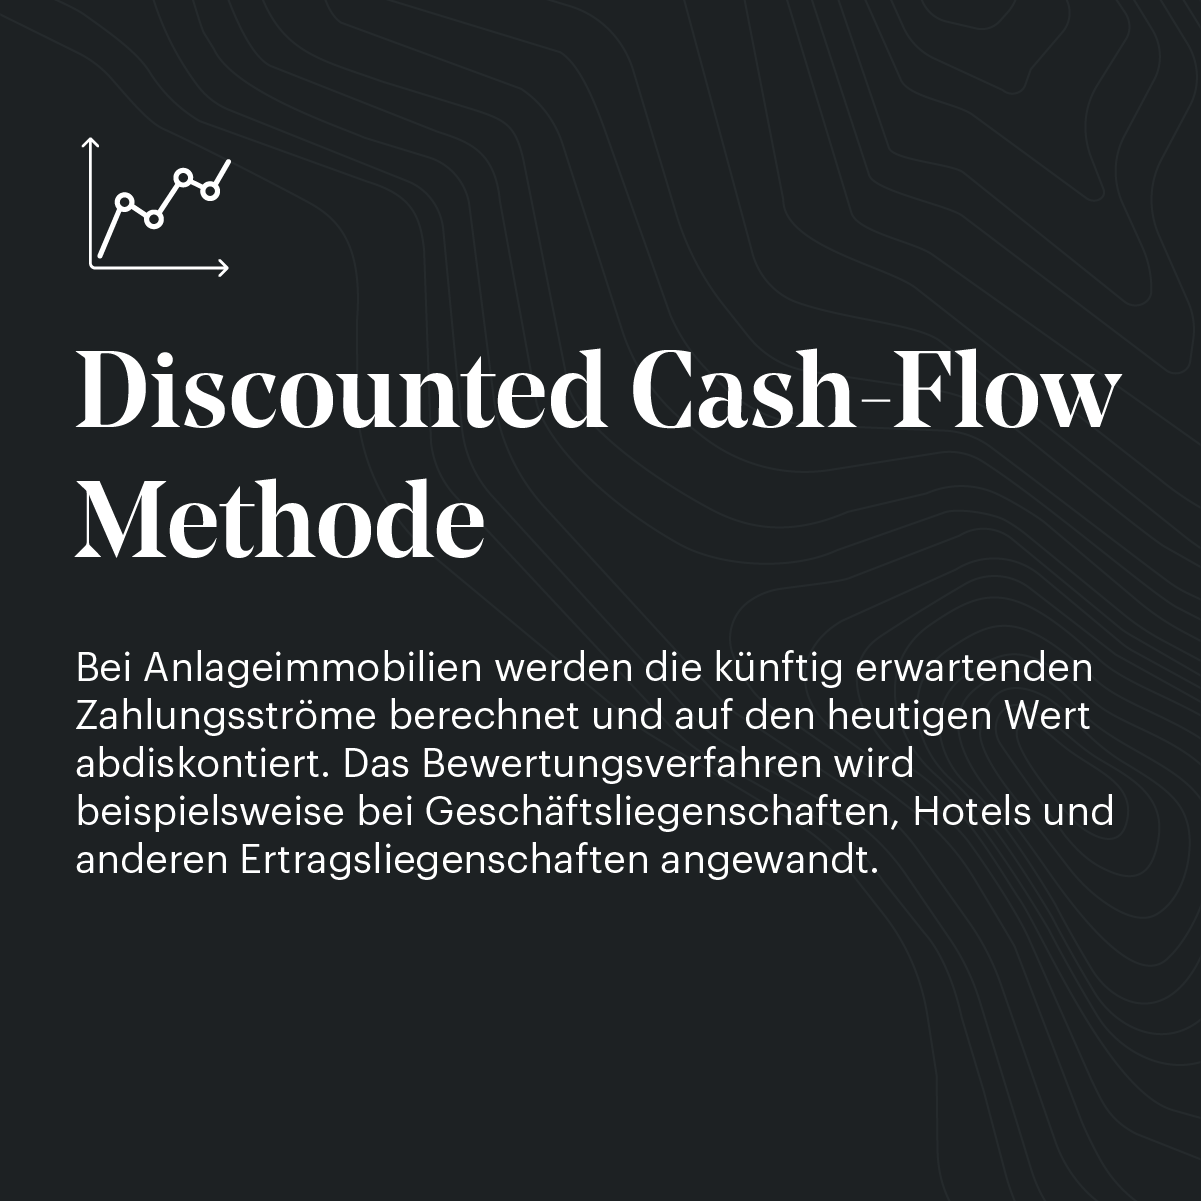 Discounted Cash-Flow Methode einfach erklärt: 